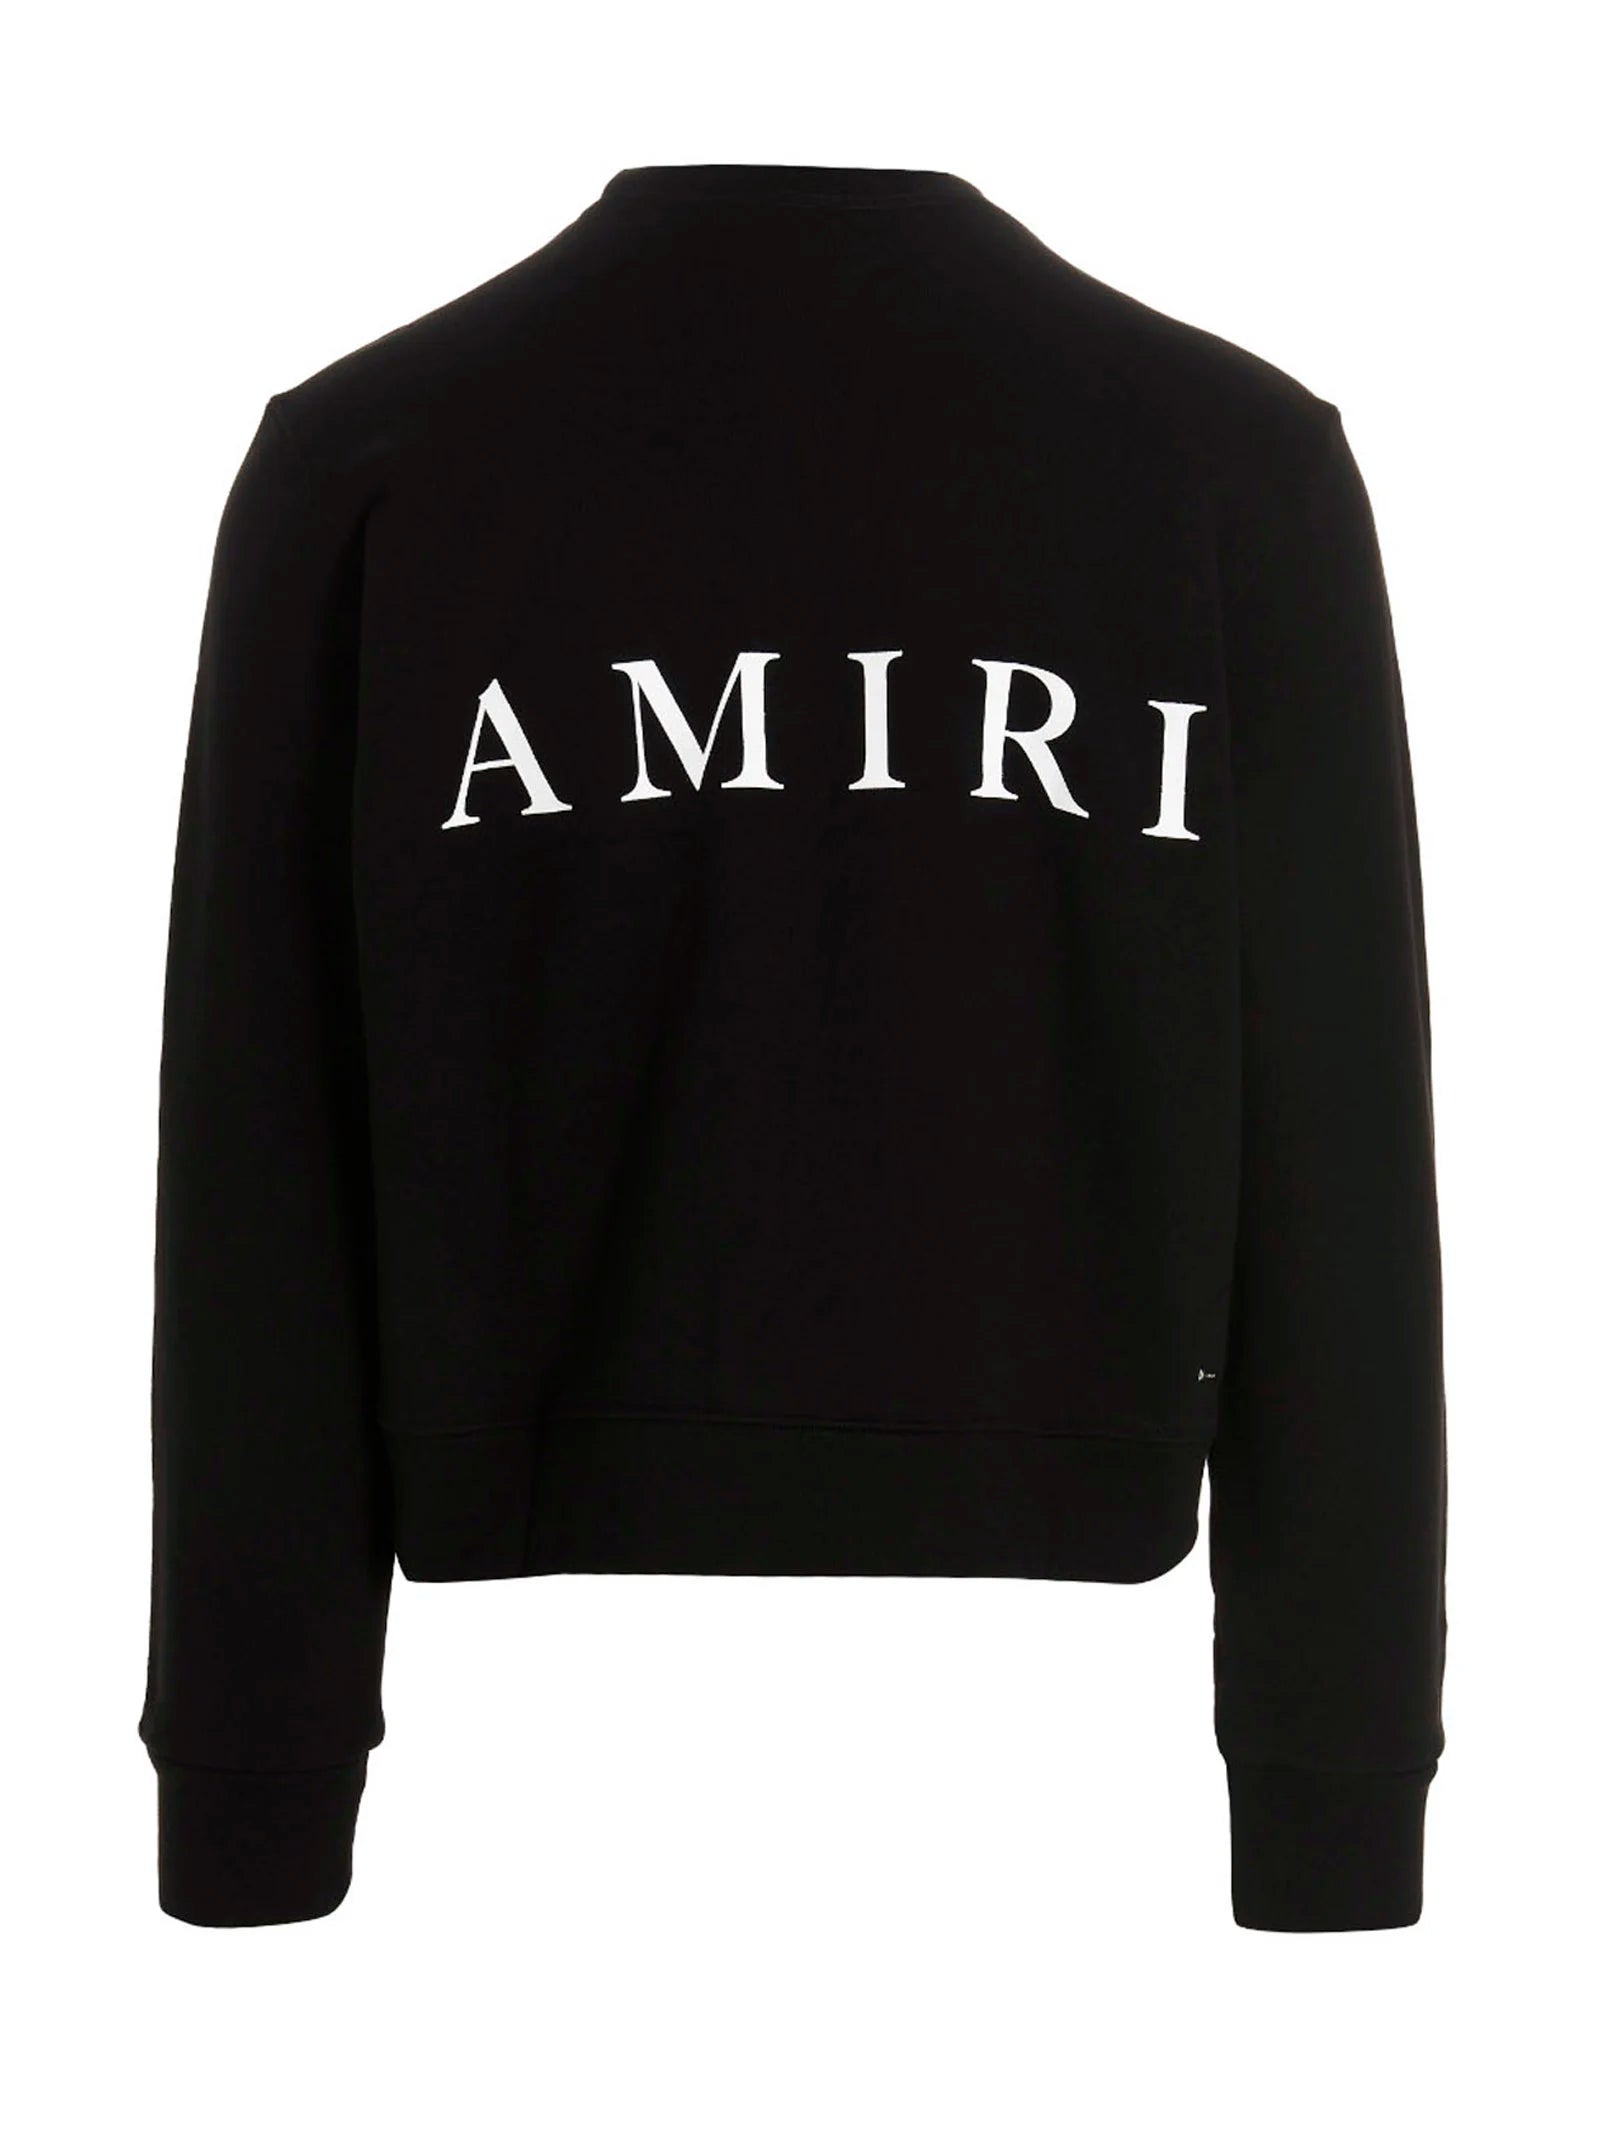 AMIRI M.A Core Logo Crewneck Black | Kenshi Toronto